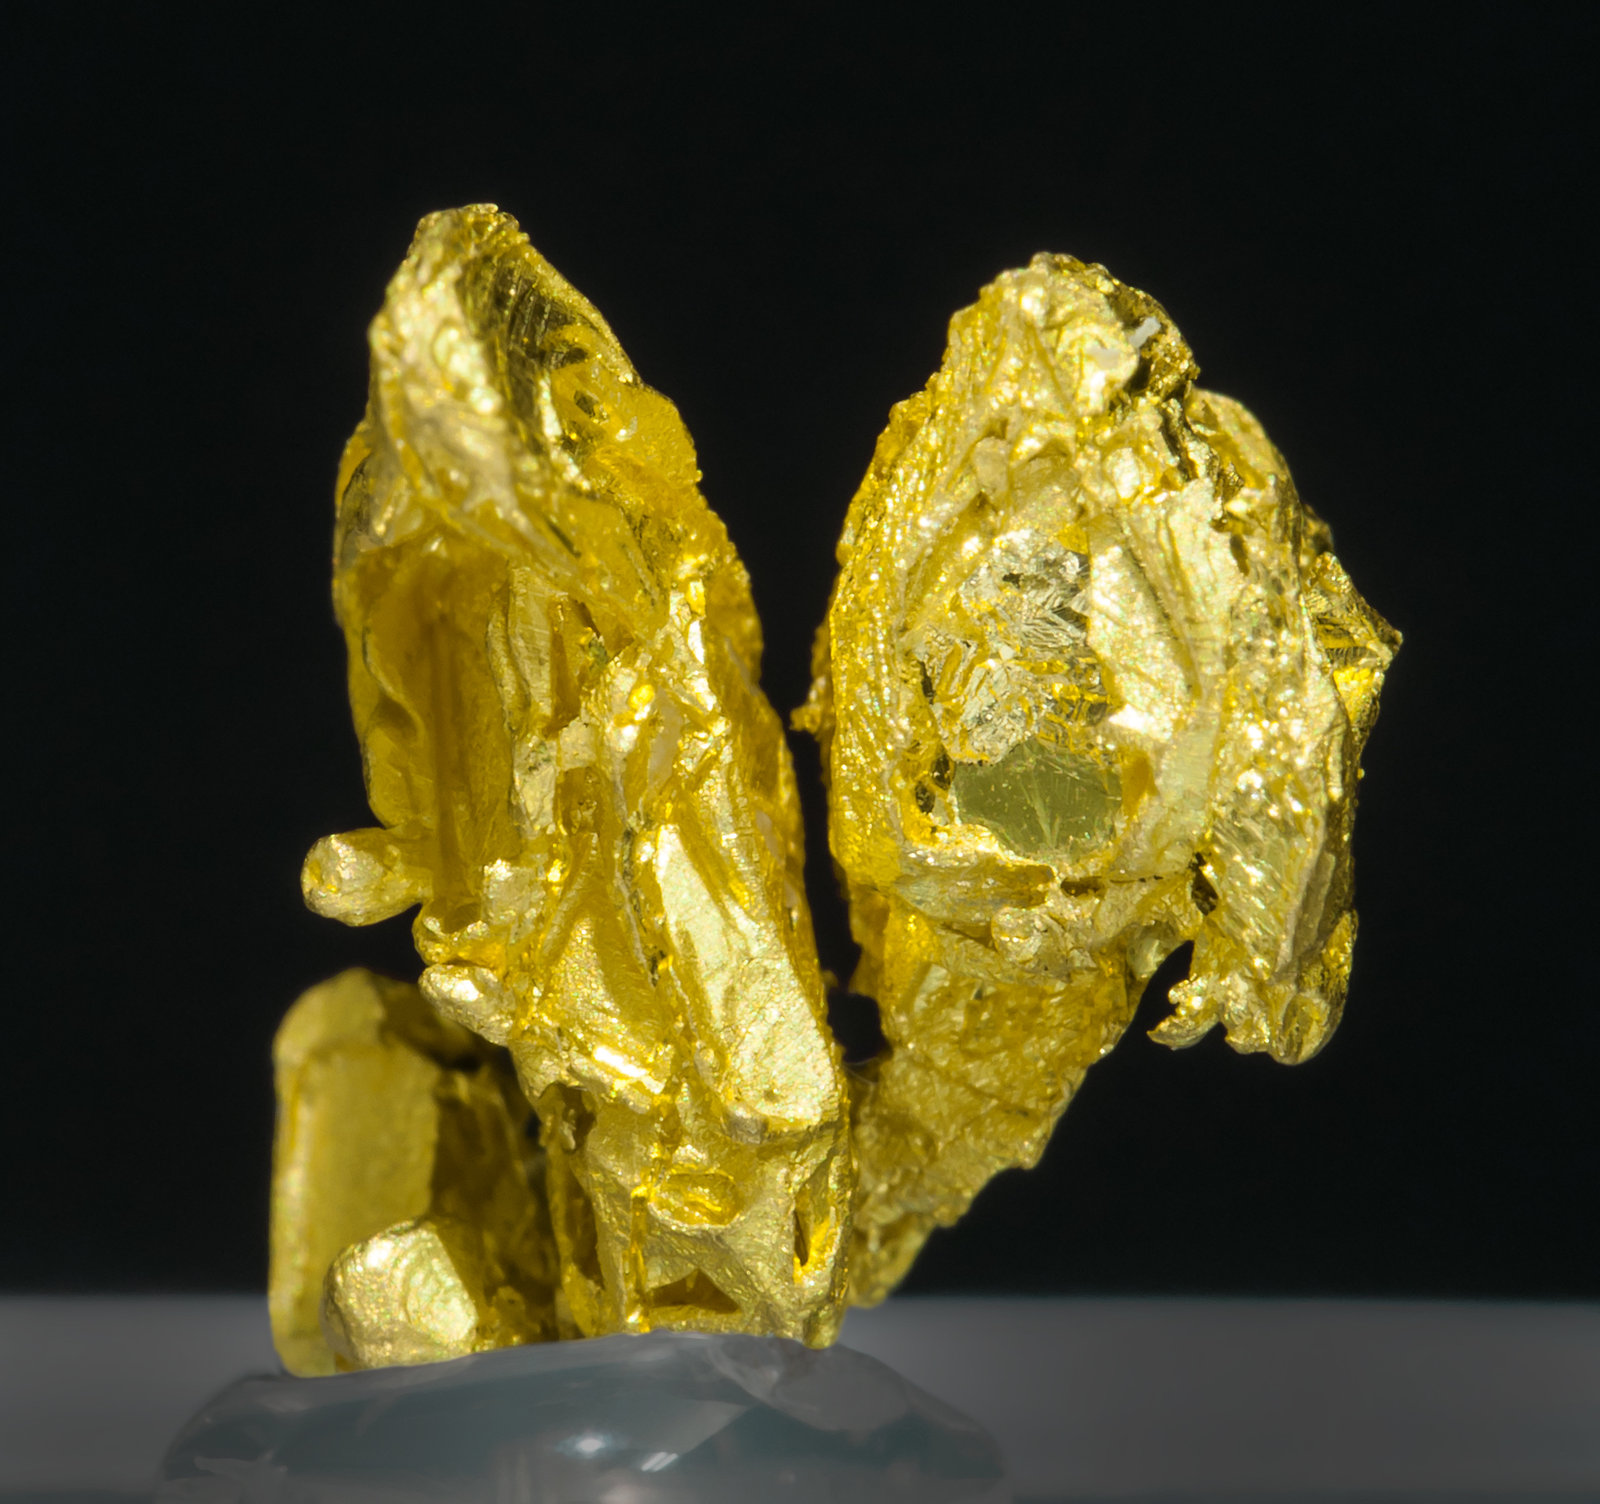 specimens/s_imagesZ7/Gold-TQ49Z7r.jpg